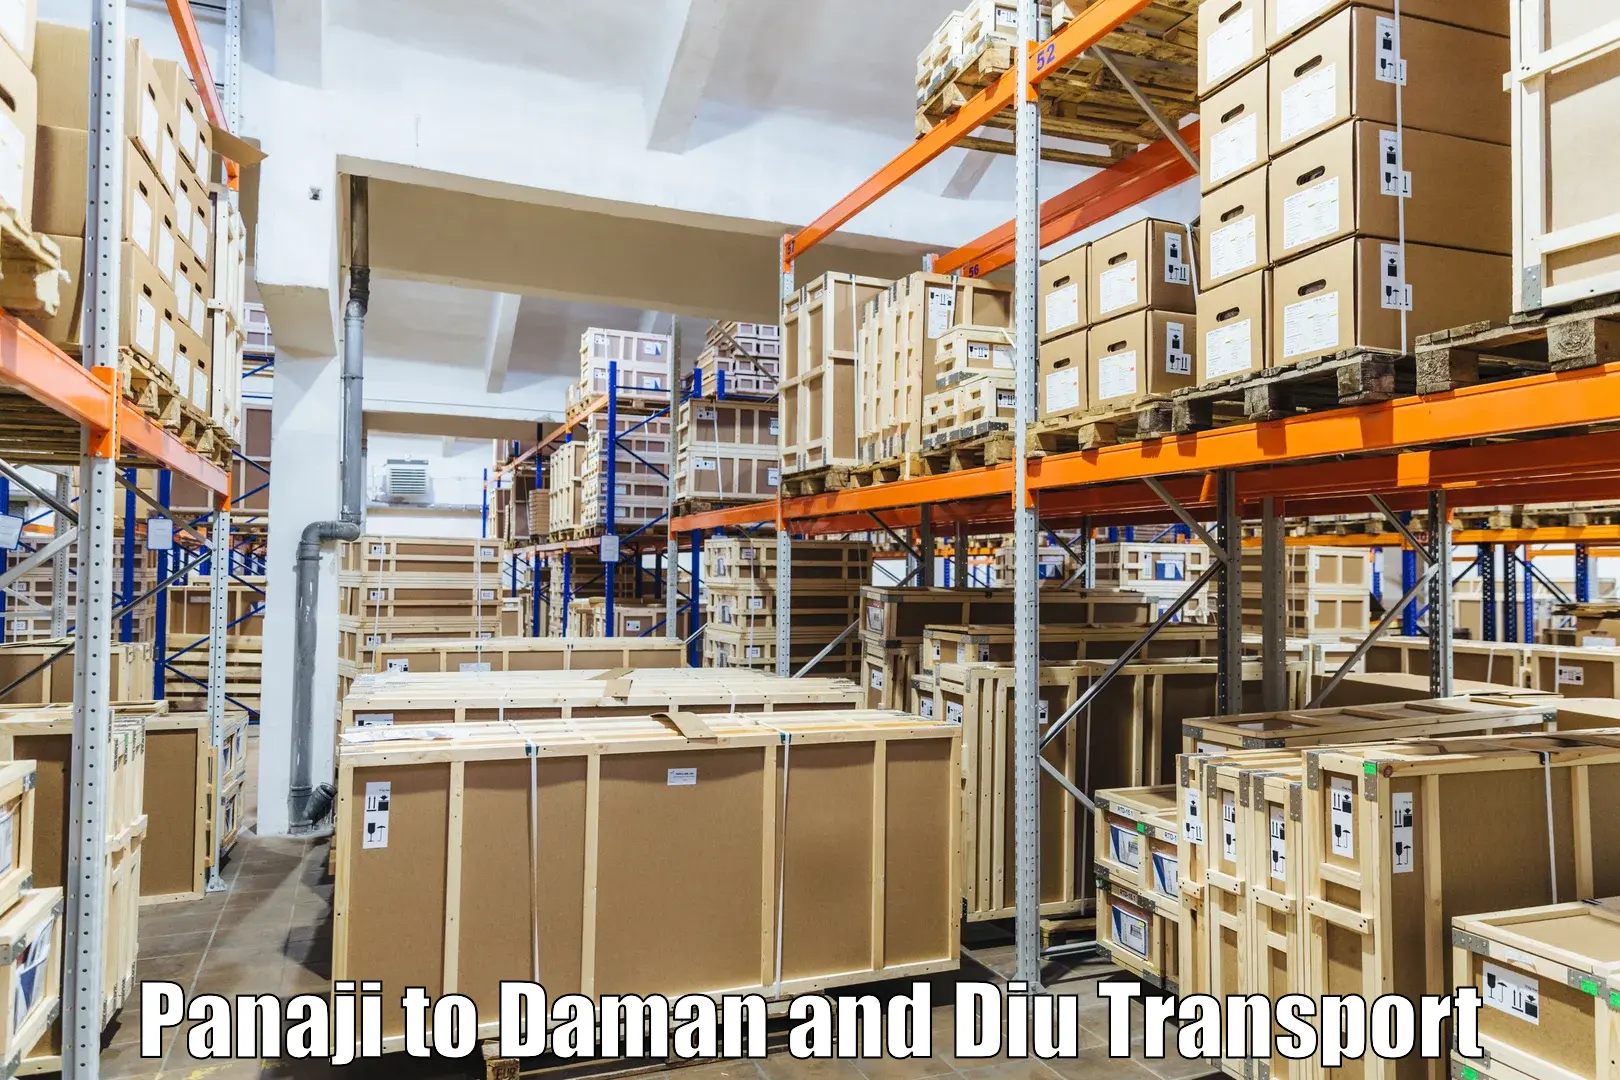 Container transport service Panaji to Daman and Diu